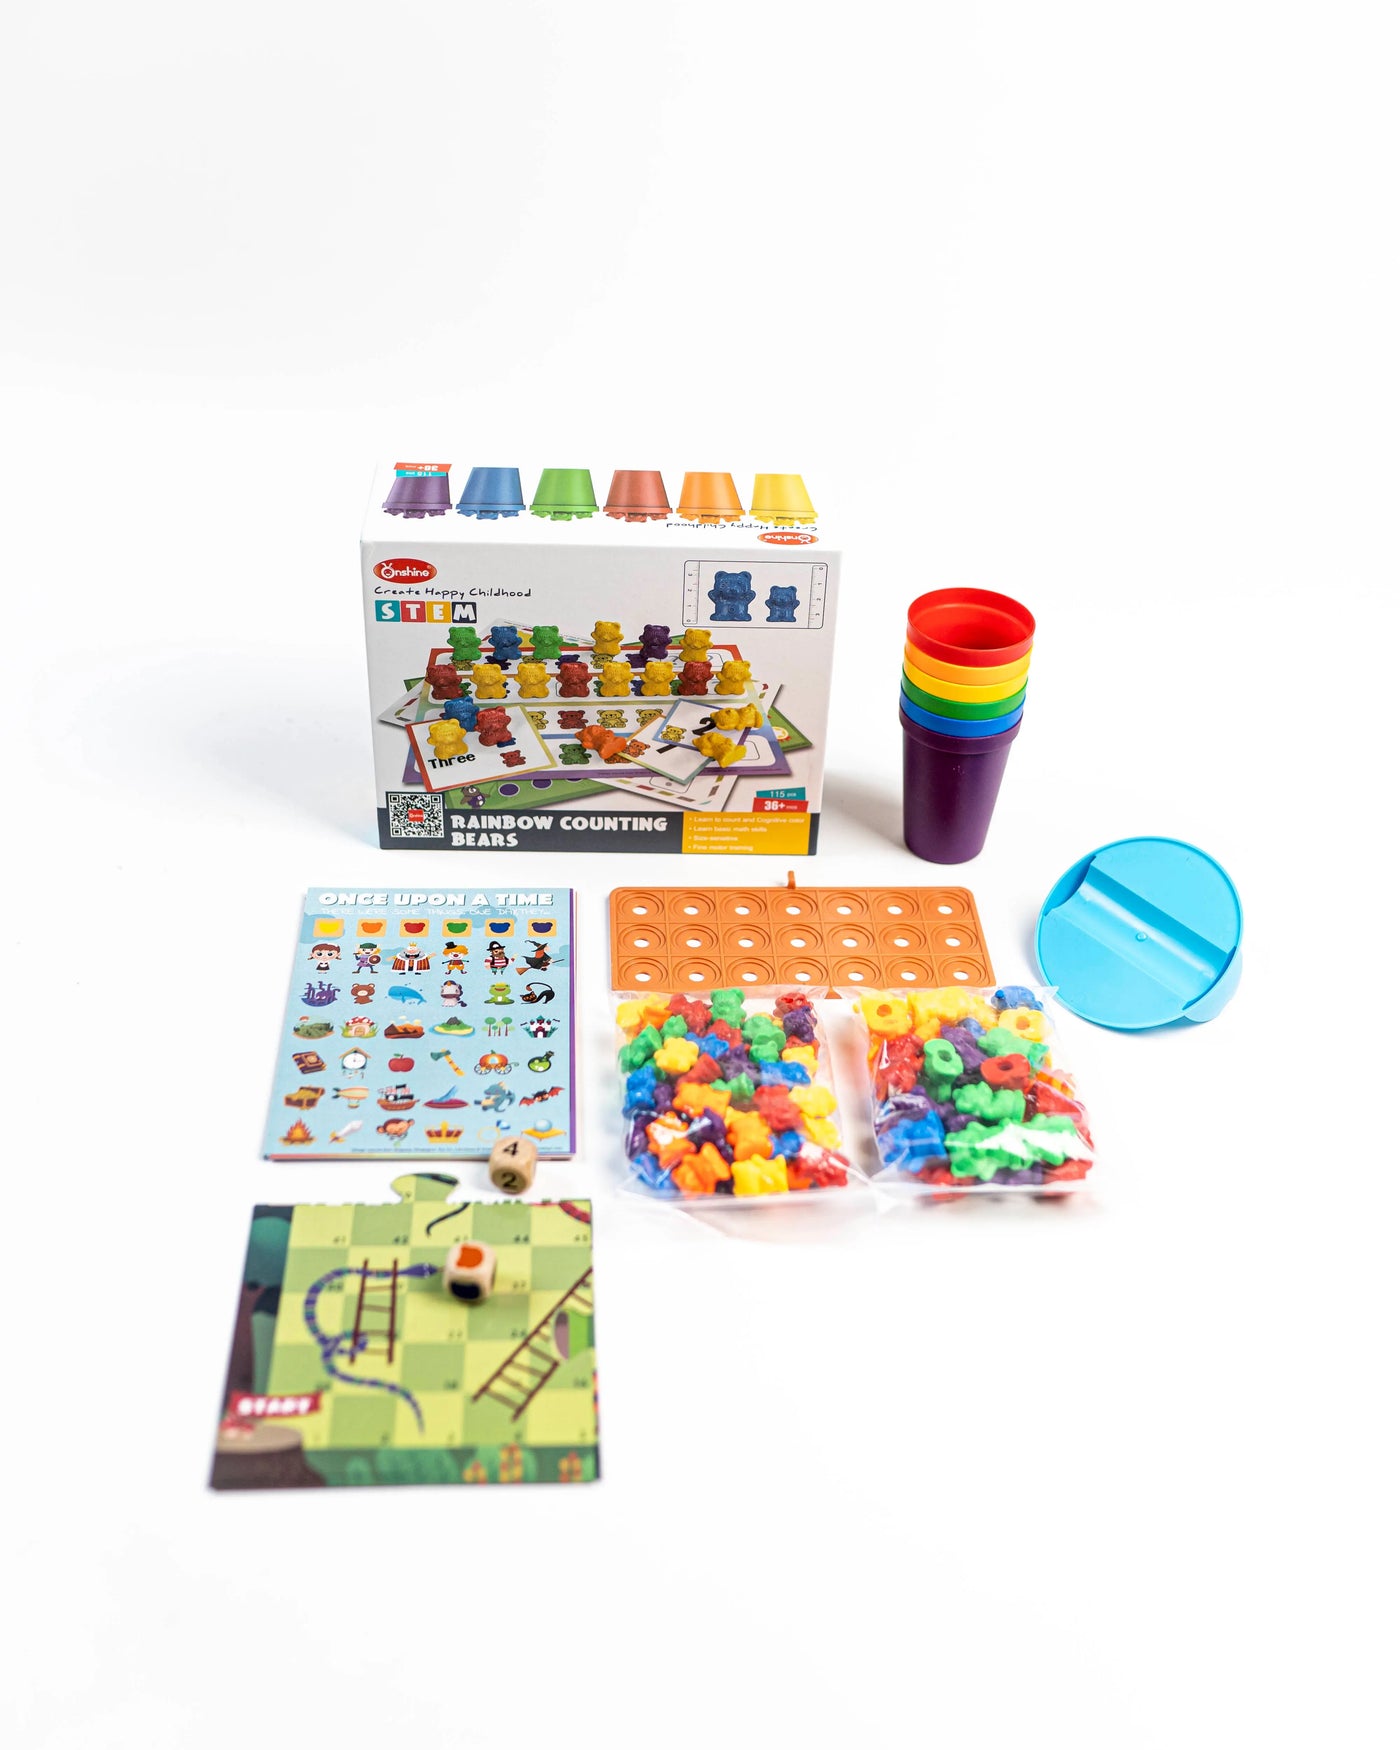 STEM Rainbow Counting Bears Eduspark Toys